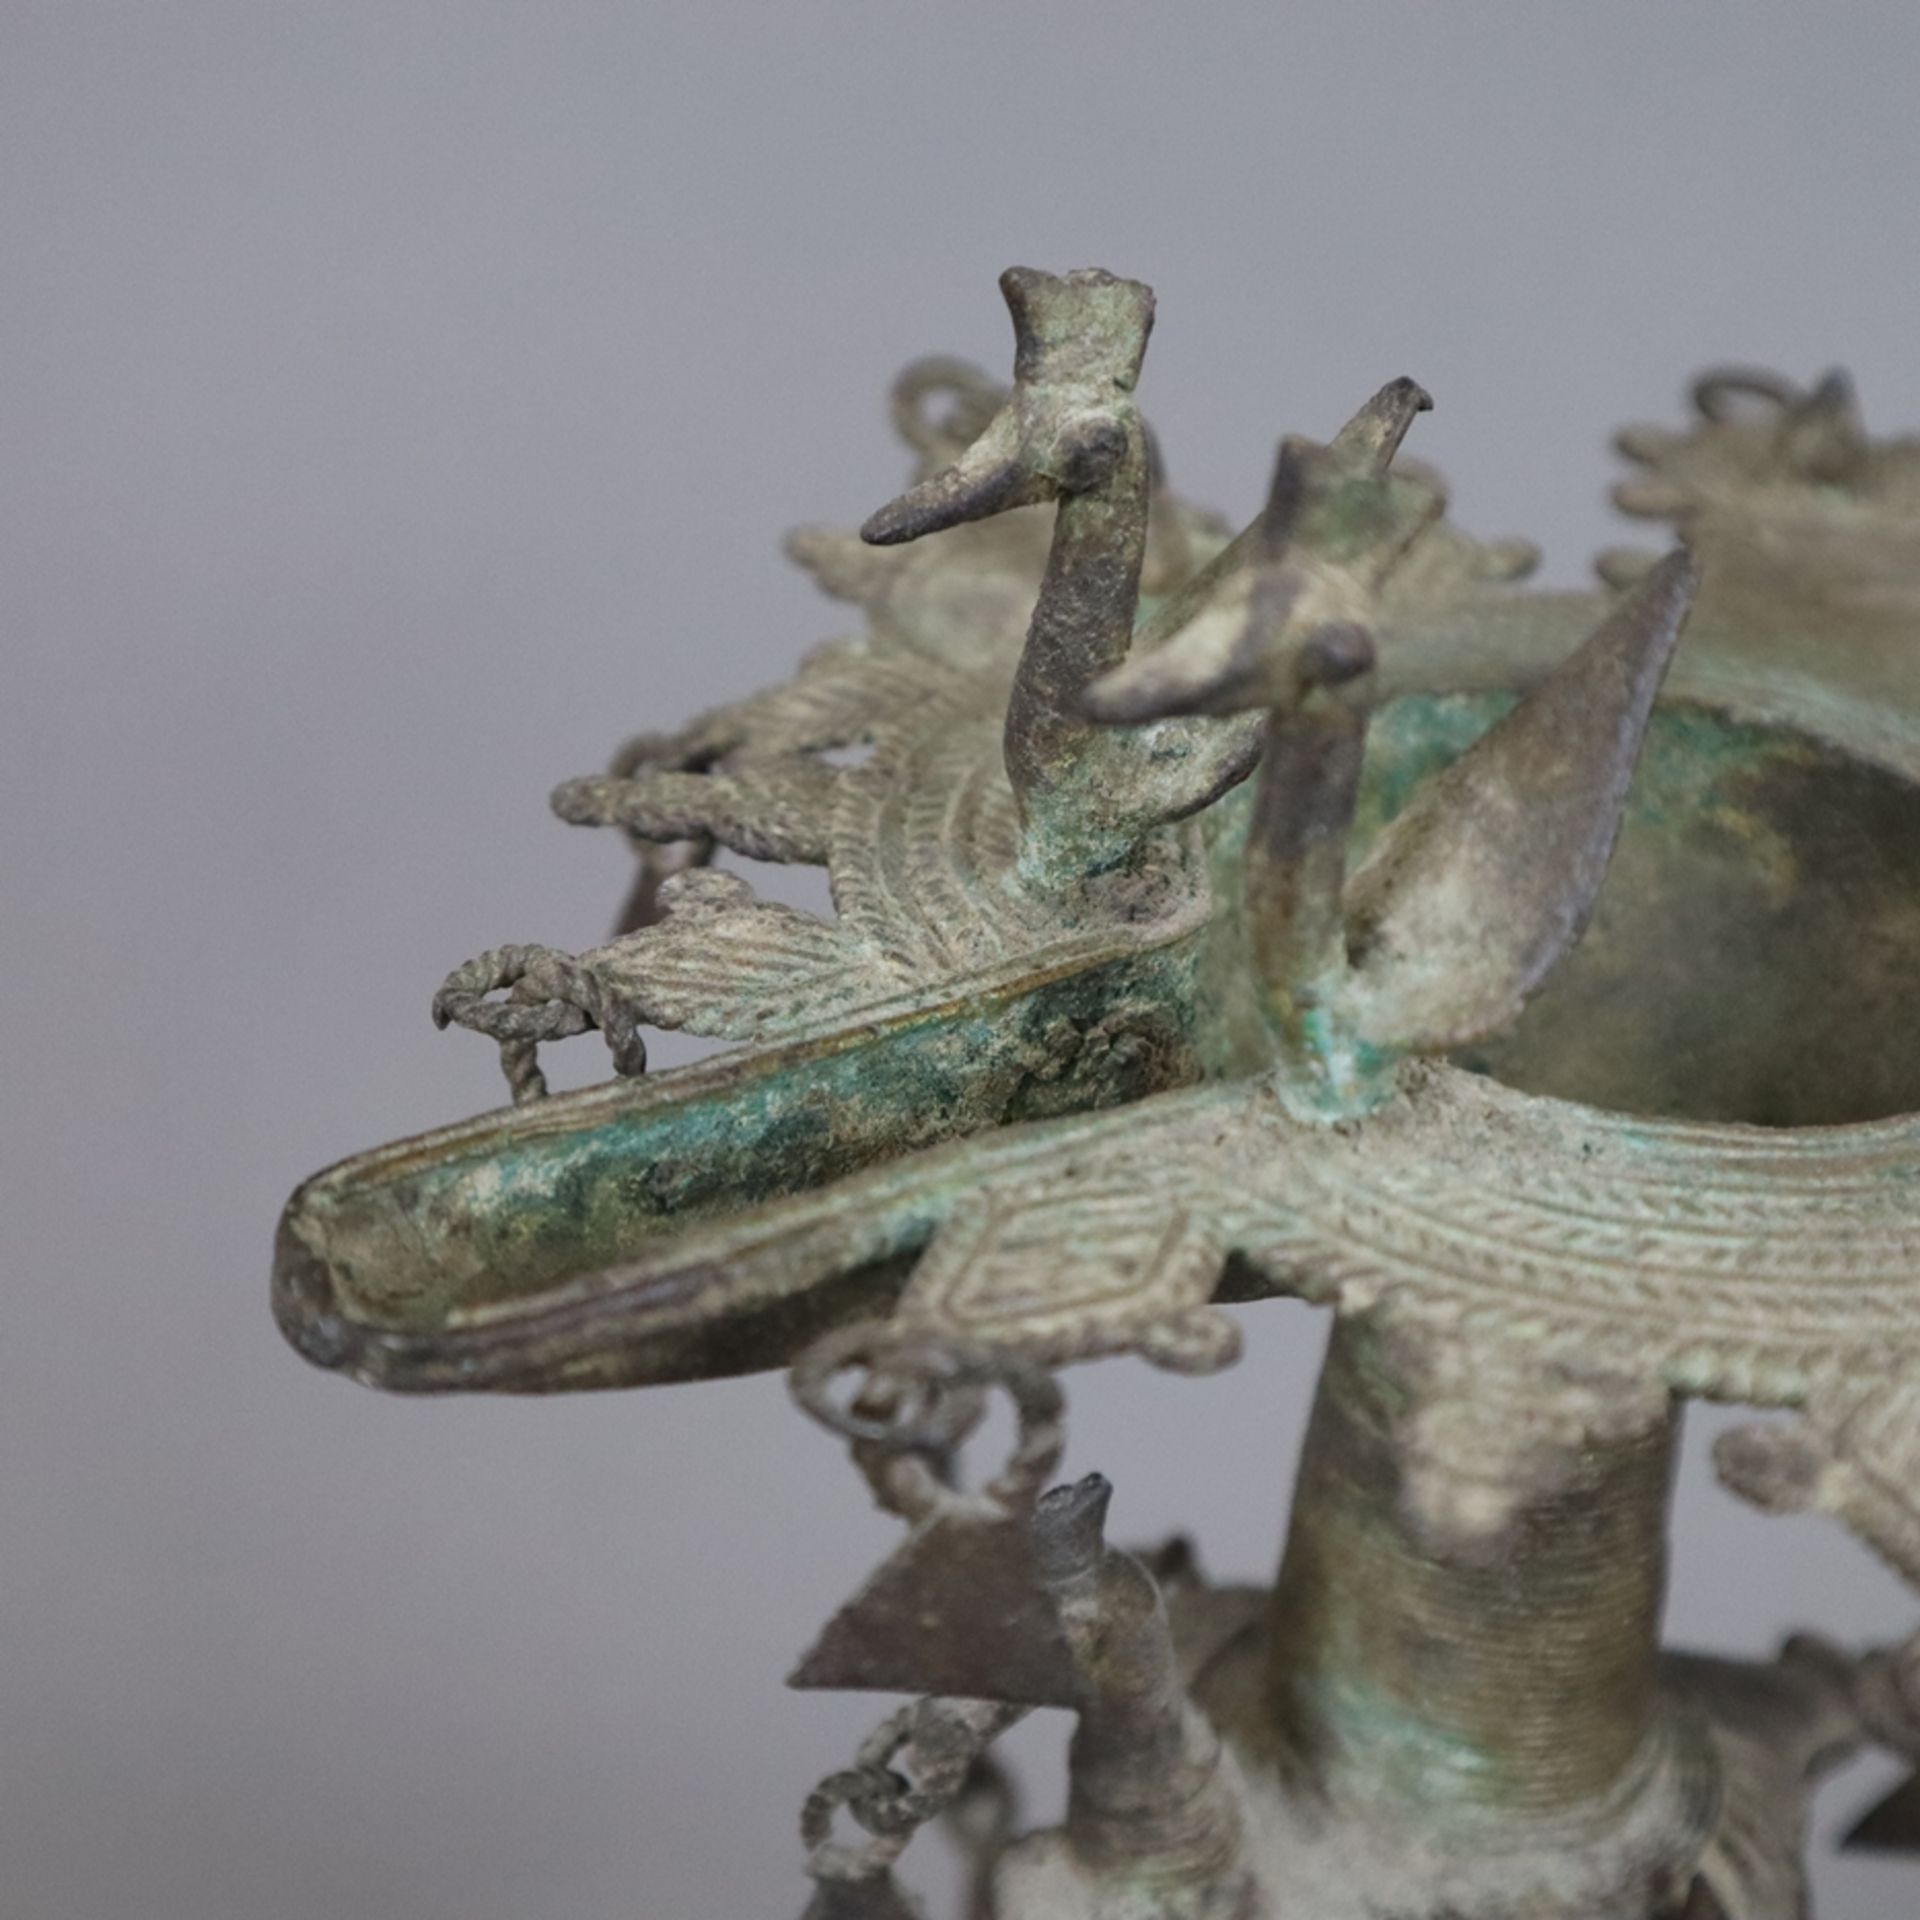 Hohe Öllampe - Indien, Bastar-Region, Bronze mit Alterspatina, über gewölbtem Fuß gegliederter Scha - Bild 3 aus 9